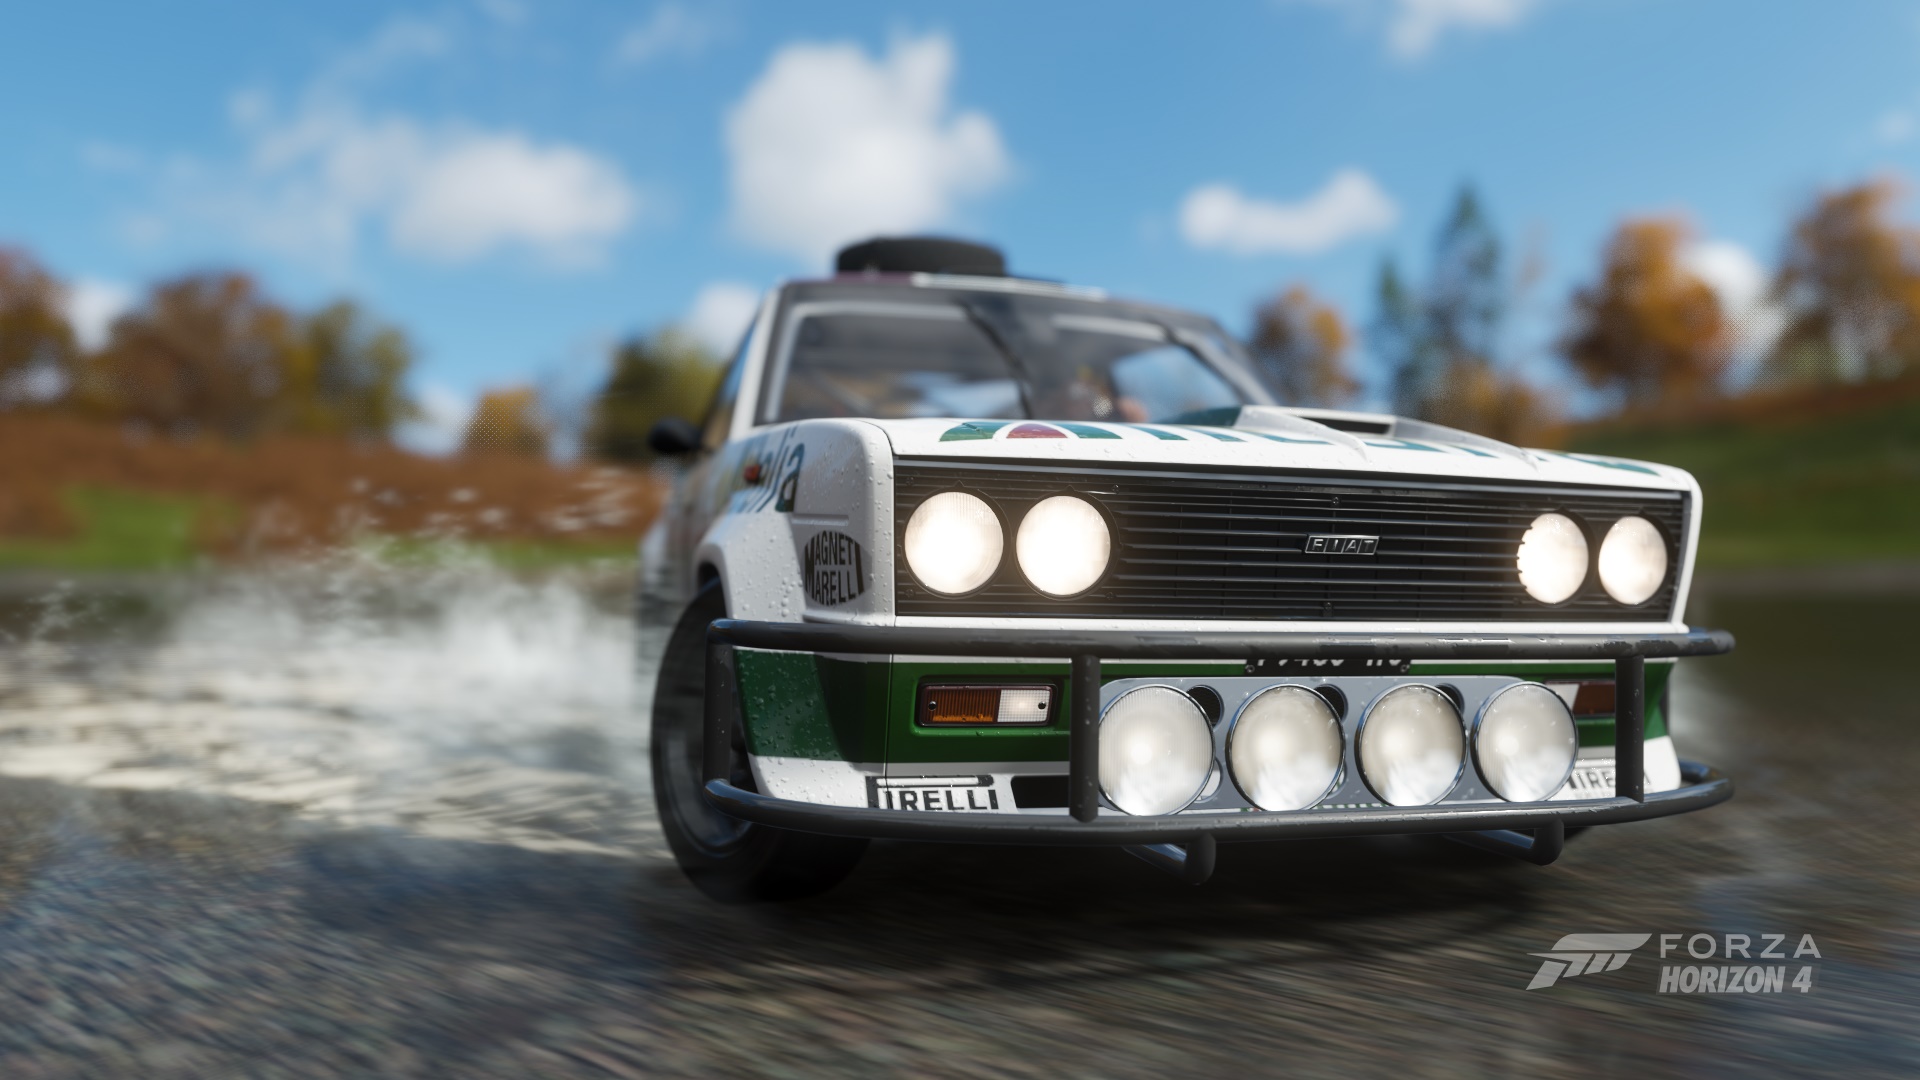 Rally Rally Cars Fiat 131 Lake Forza Forza Horizon 4 1920x1080